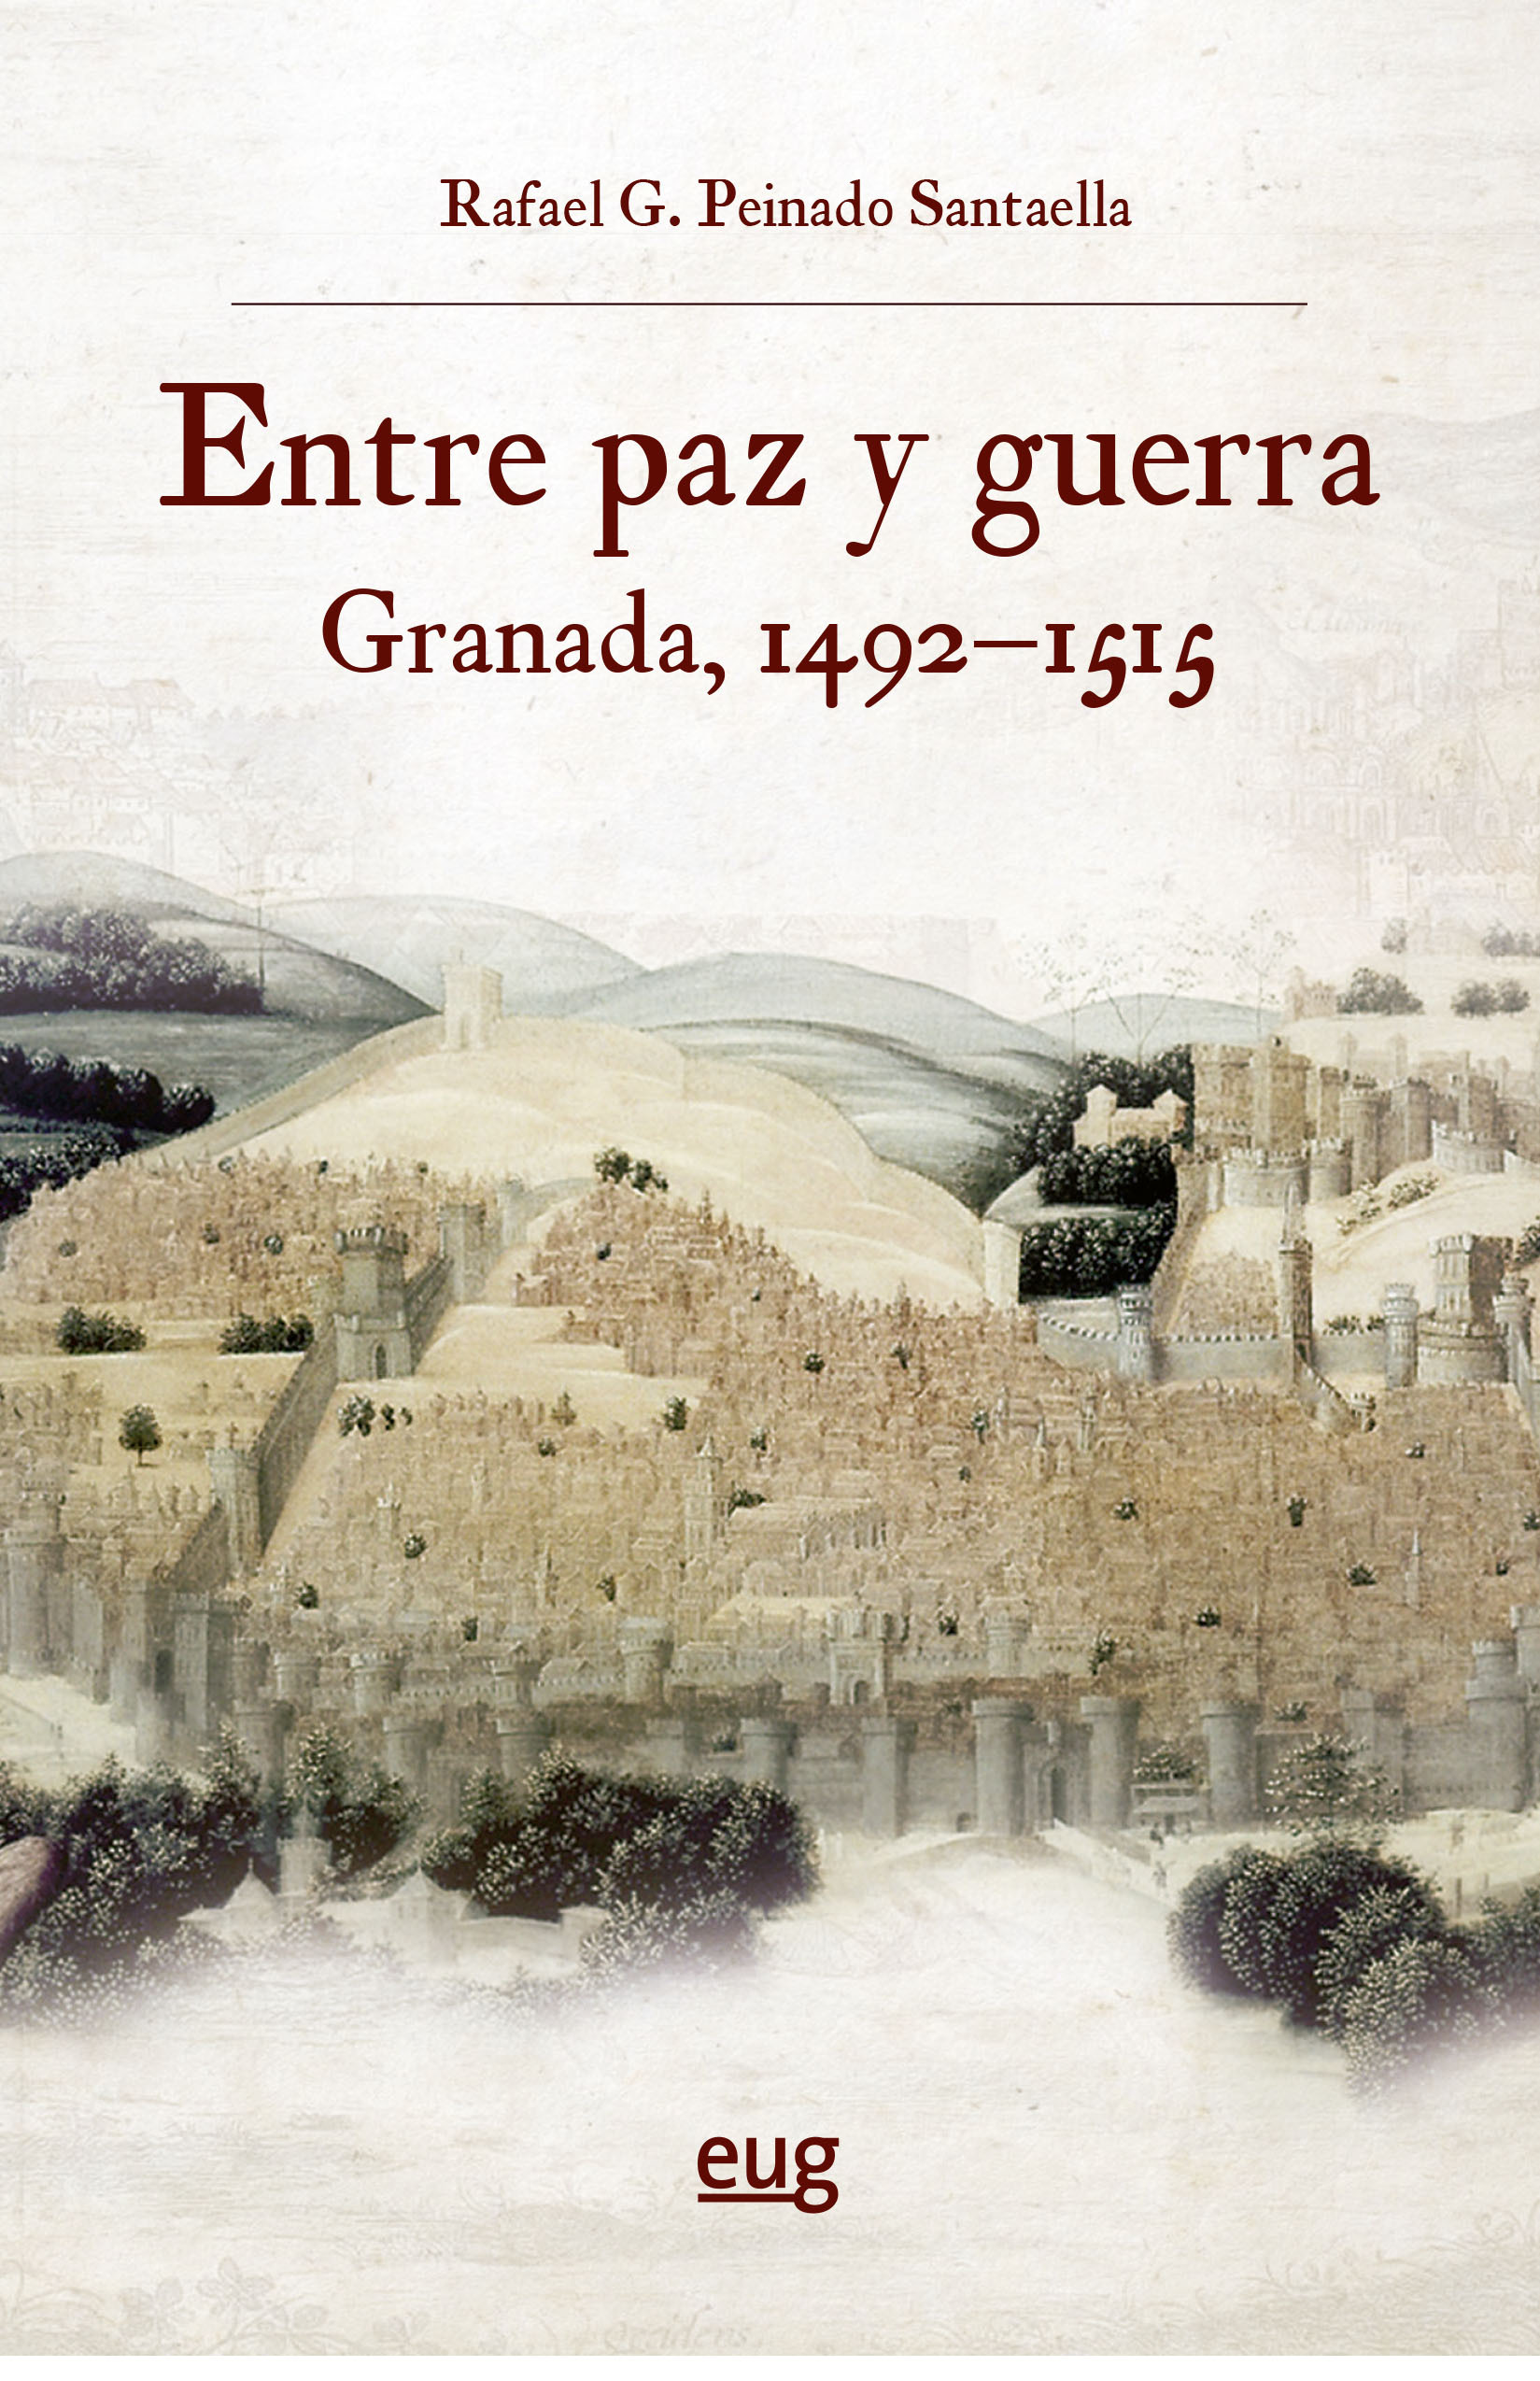 Imagen de portada del libro Entre paz y guerra